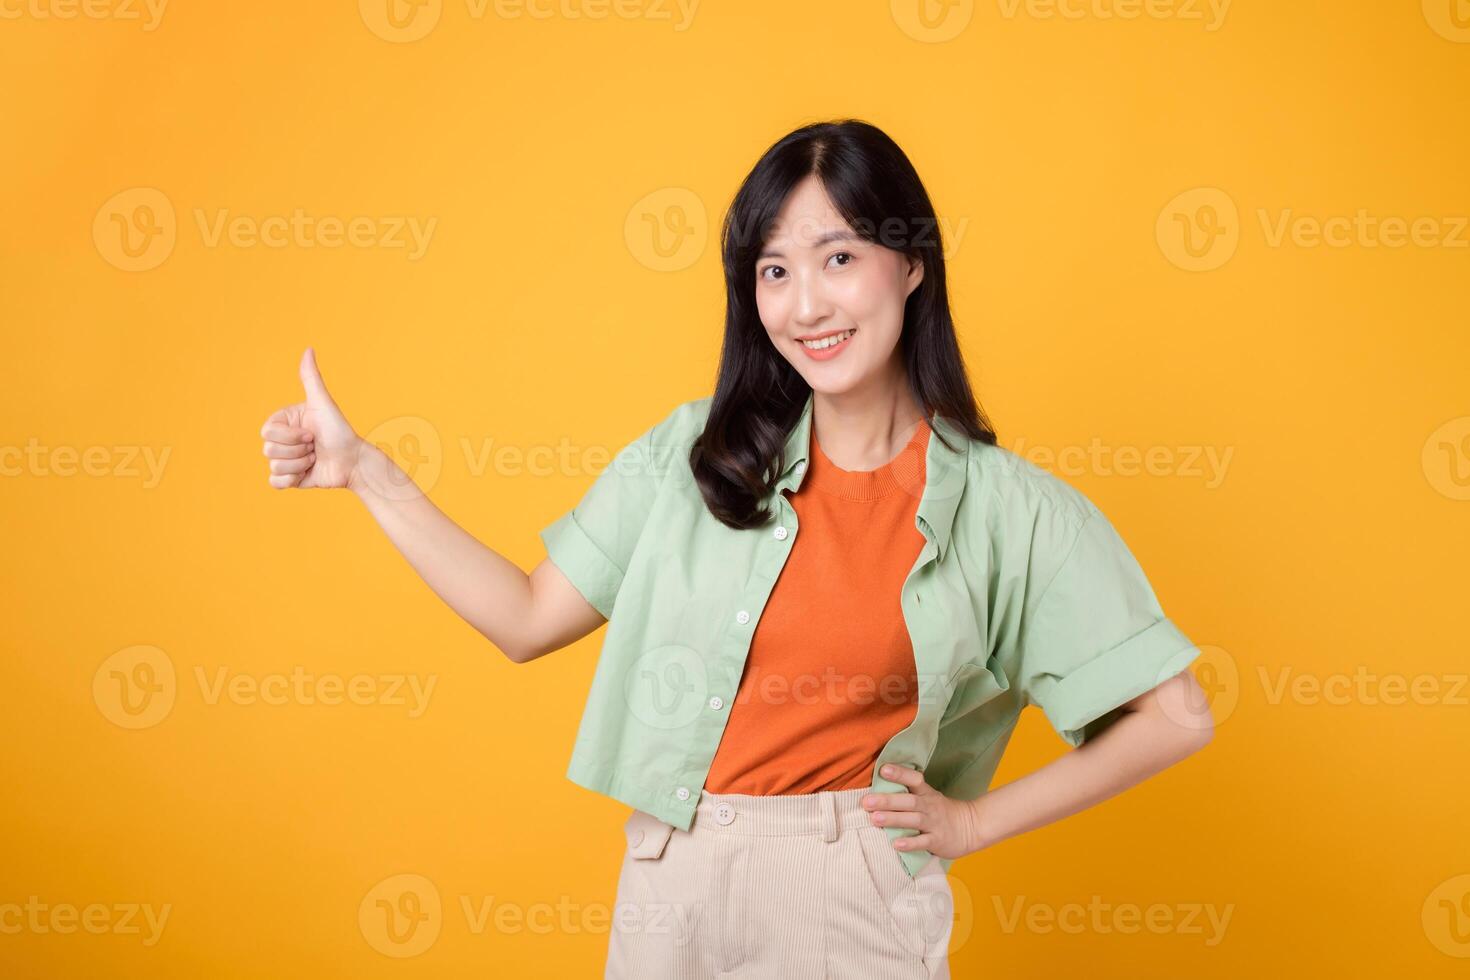 godkännande med ung asiatisk kvinna i henne 30-talet, elegant klädd i ett orange skjorta och grön hoppare. henne tummen upp gest, uppsättning mot en solig gul bakgrund, symboliserar de begrepp av bekräftelse. foto